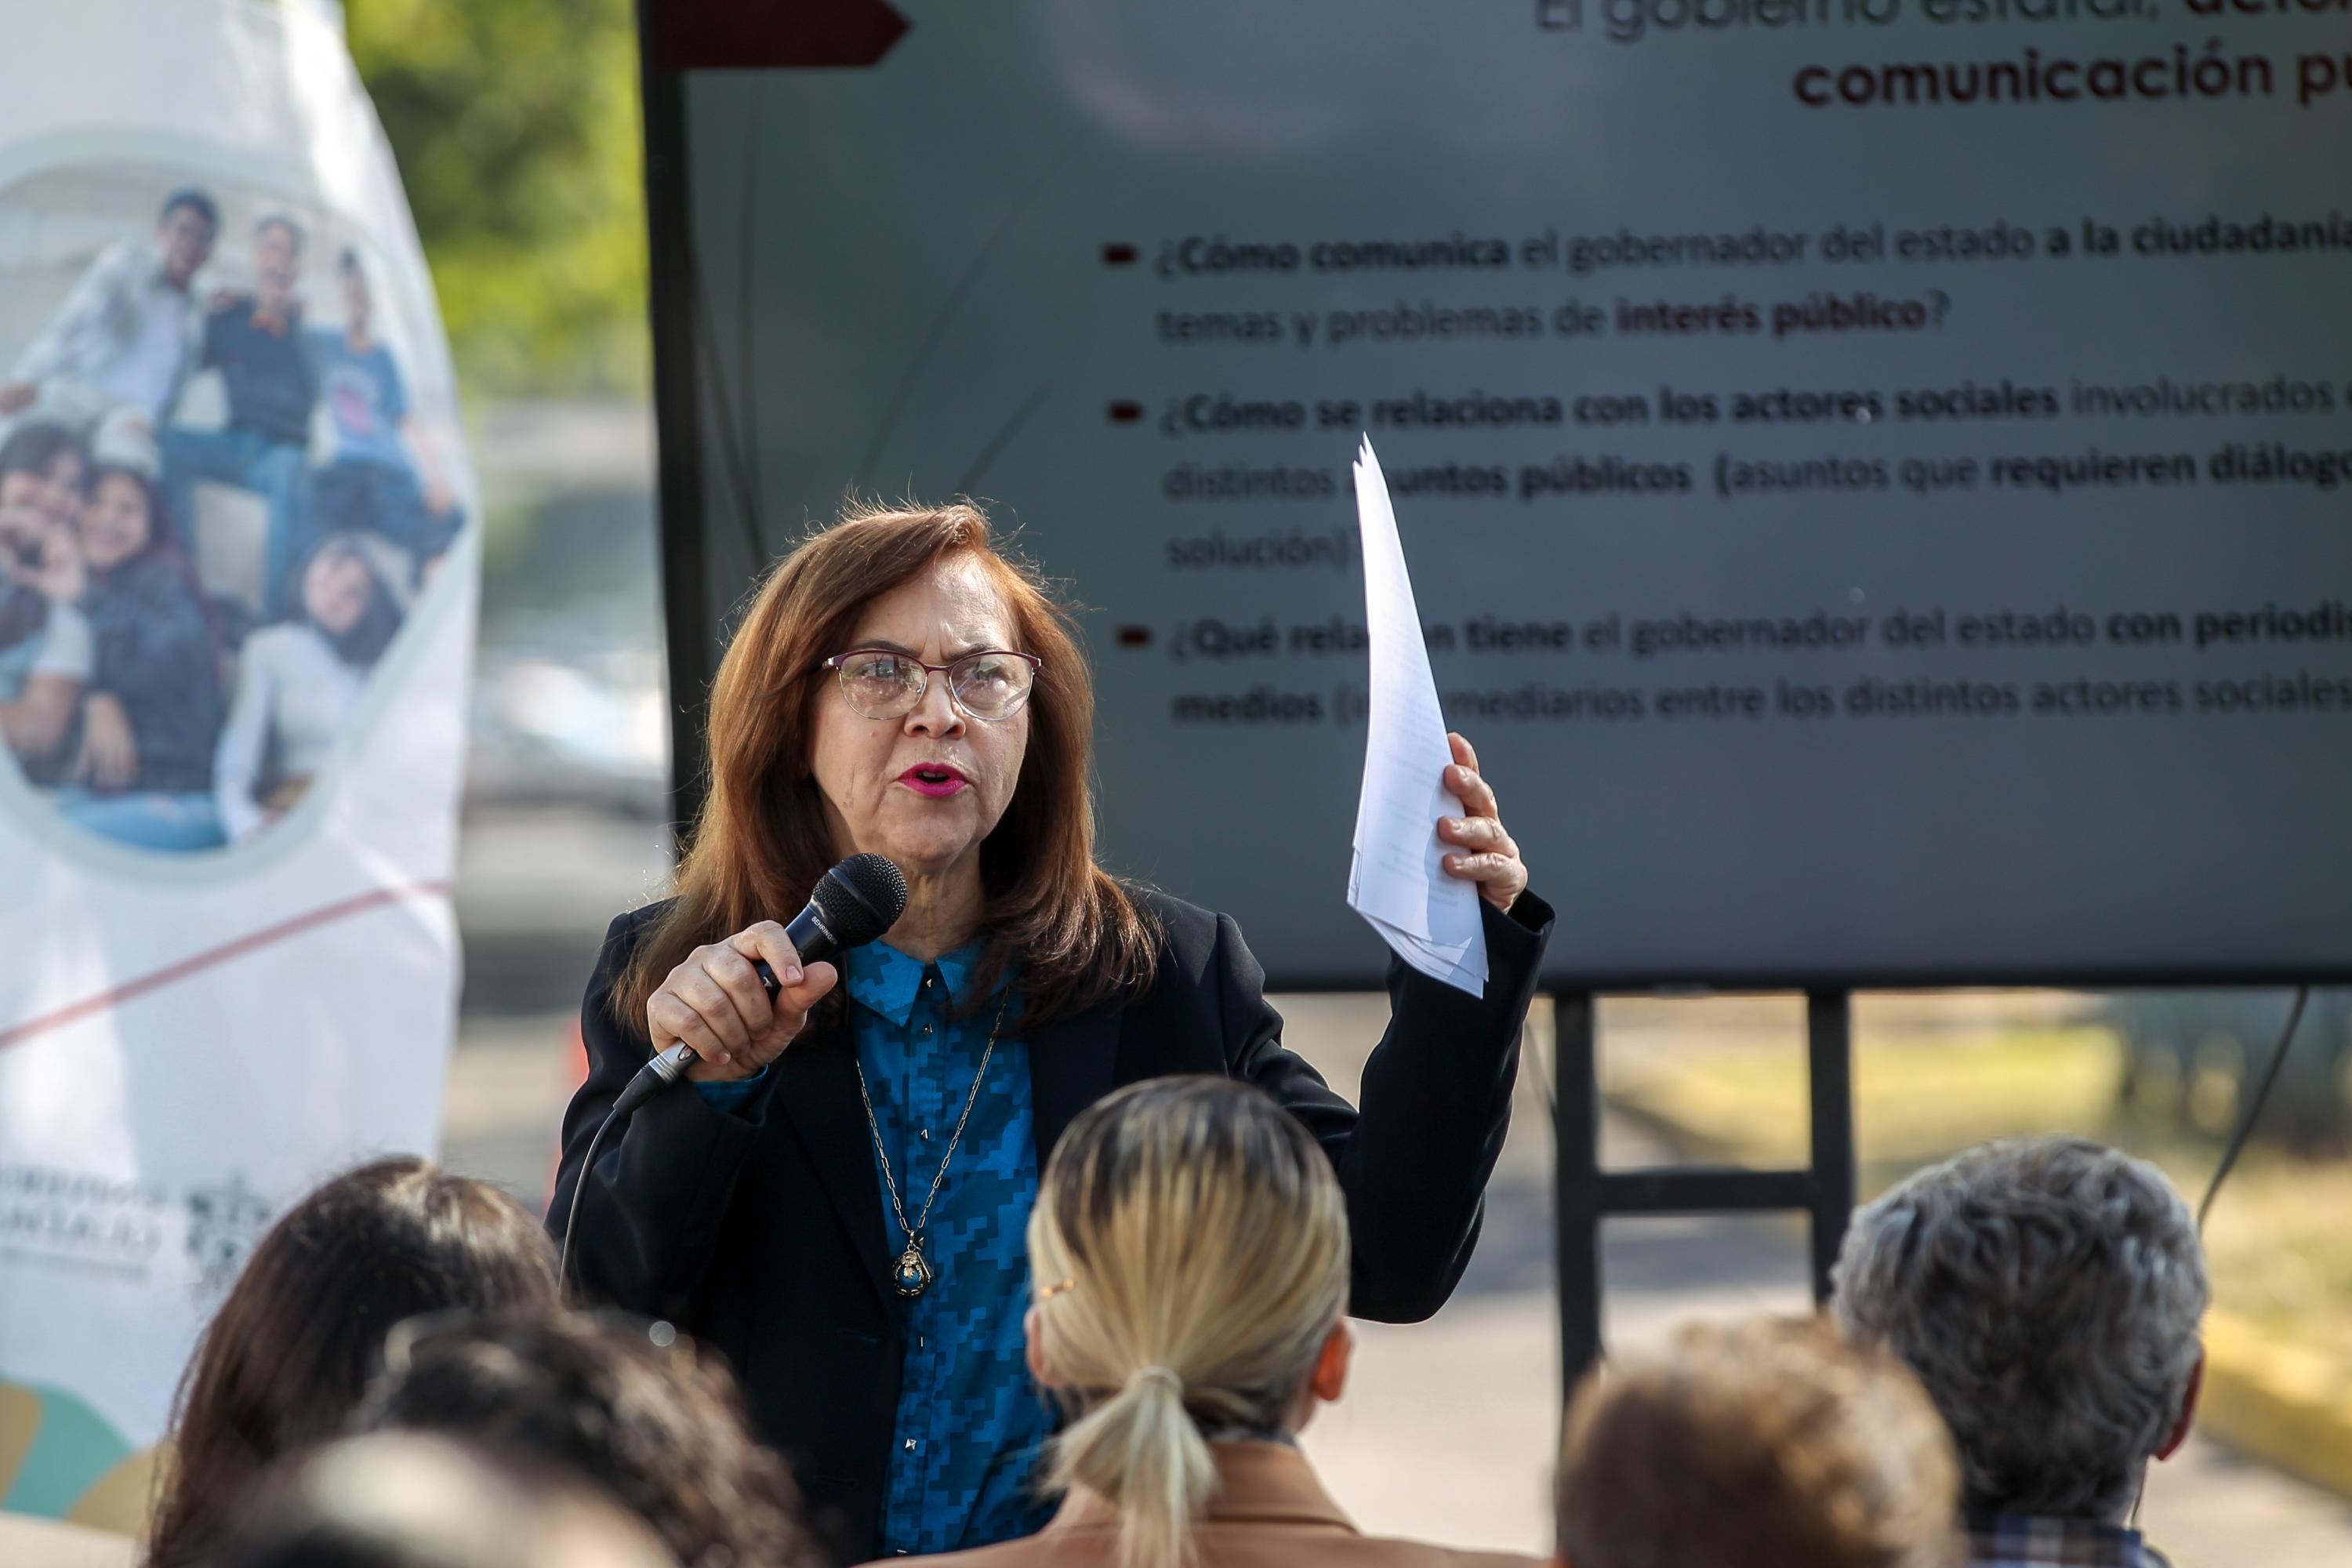 La investigadora María Elena Hernández advierte que con el gobierno de Enrique Alfaro, el debate ha sido desigual por el uso de recursos públicos en su aspiración política